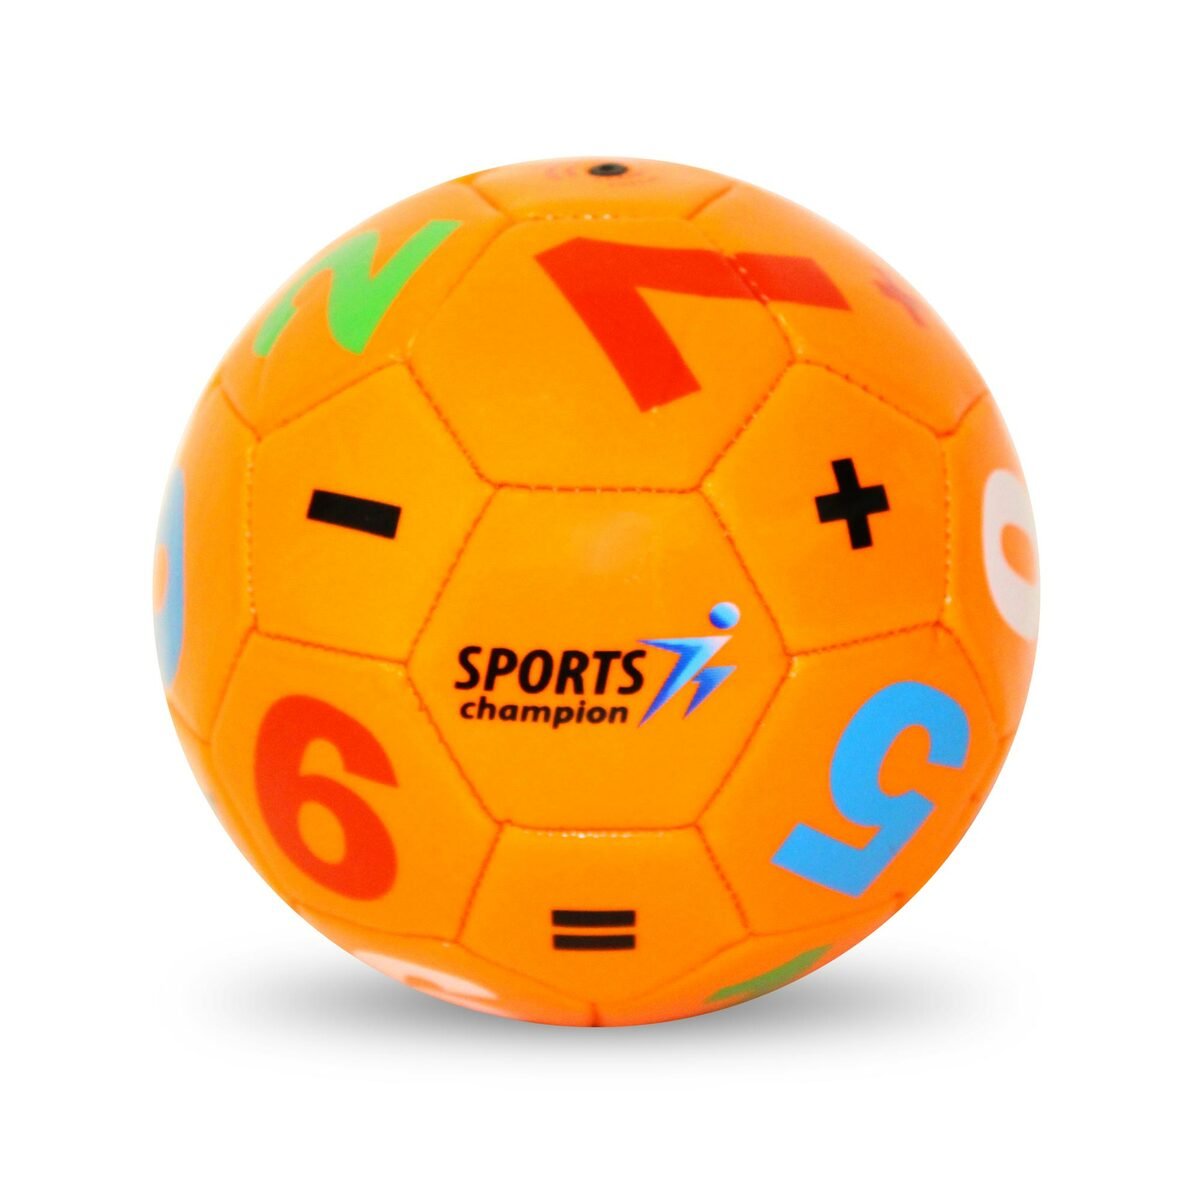 سبورتس شامبيون كرة قدم صغيرة  TB021/TB012 بالوان وتصاميم متعددة